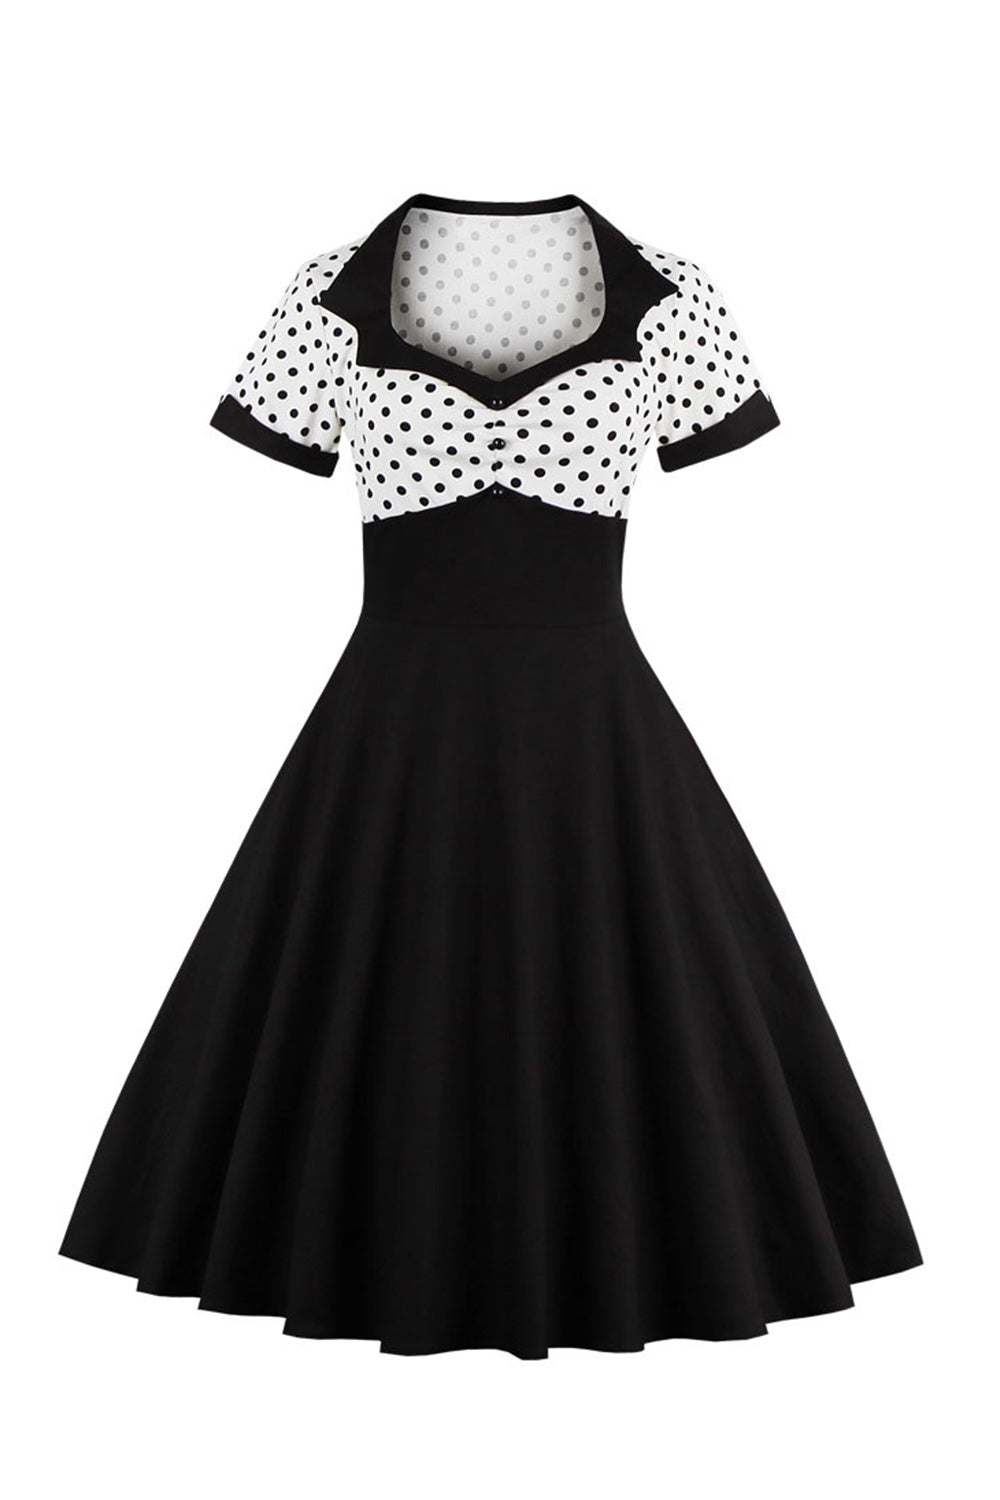 Sort Polka Dots Swing 1950'er kjole med korte ærmer